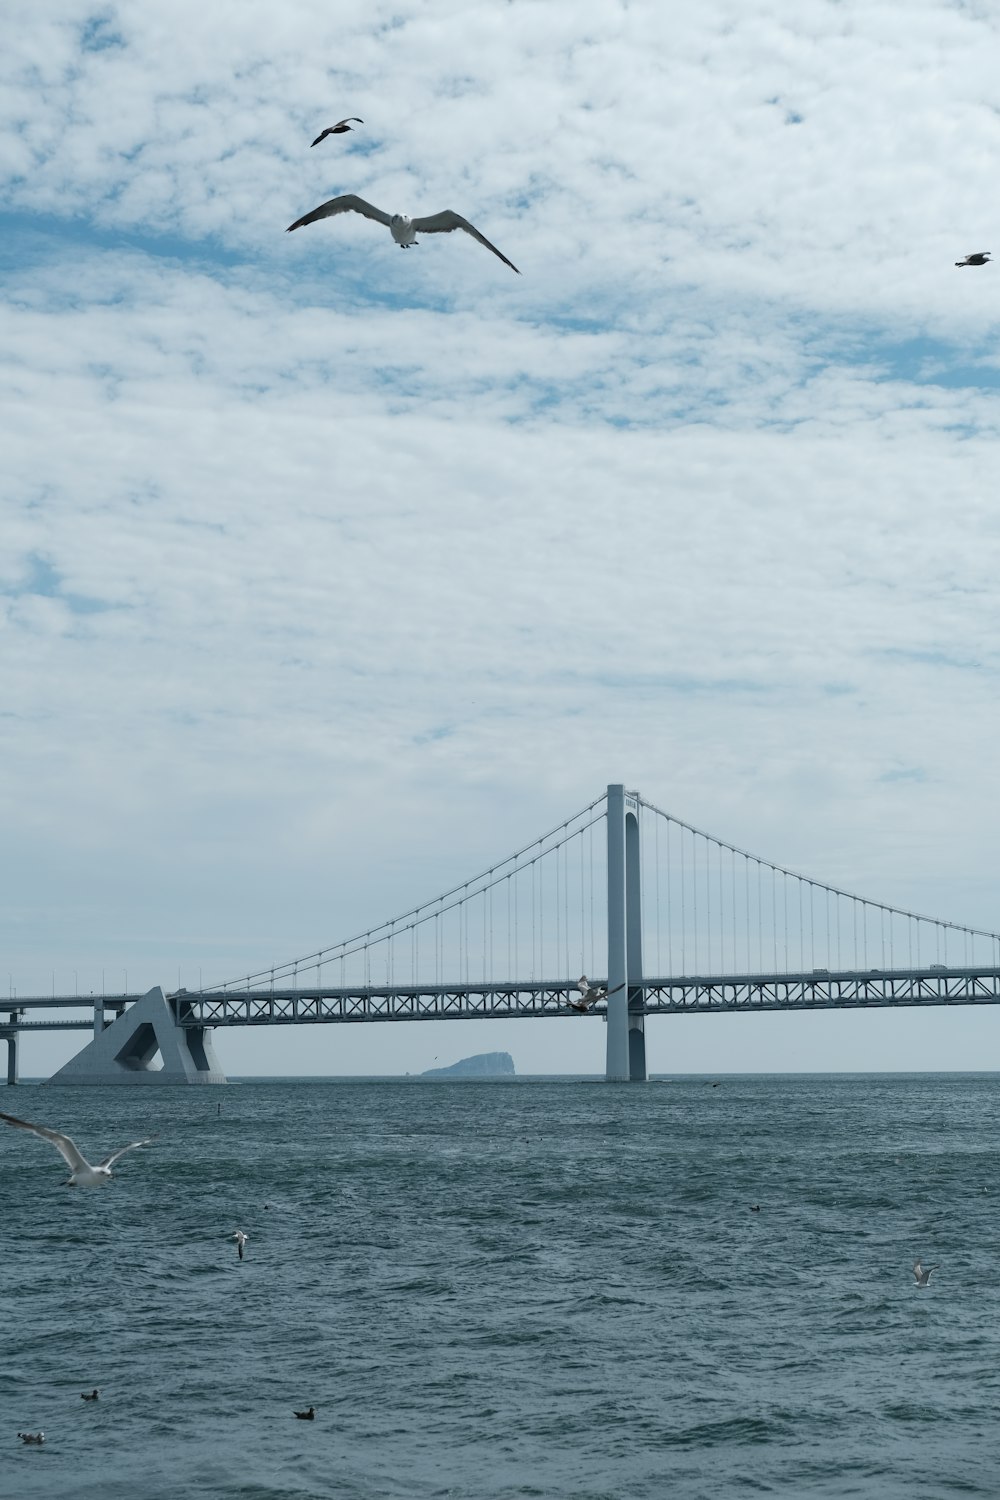 Pájaros volando sobre un puente